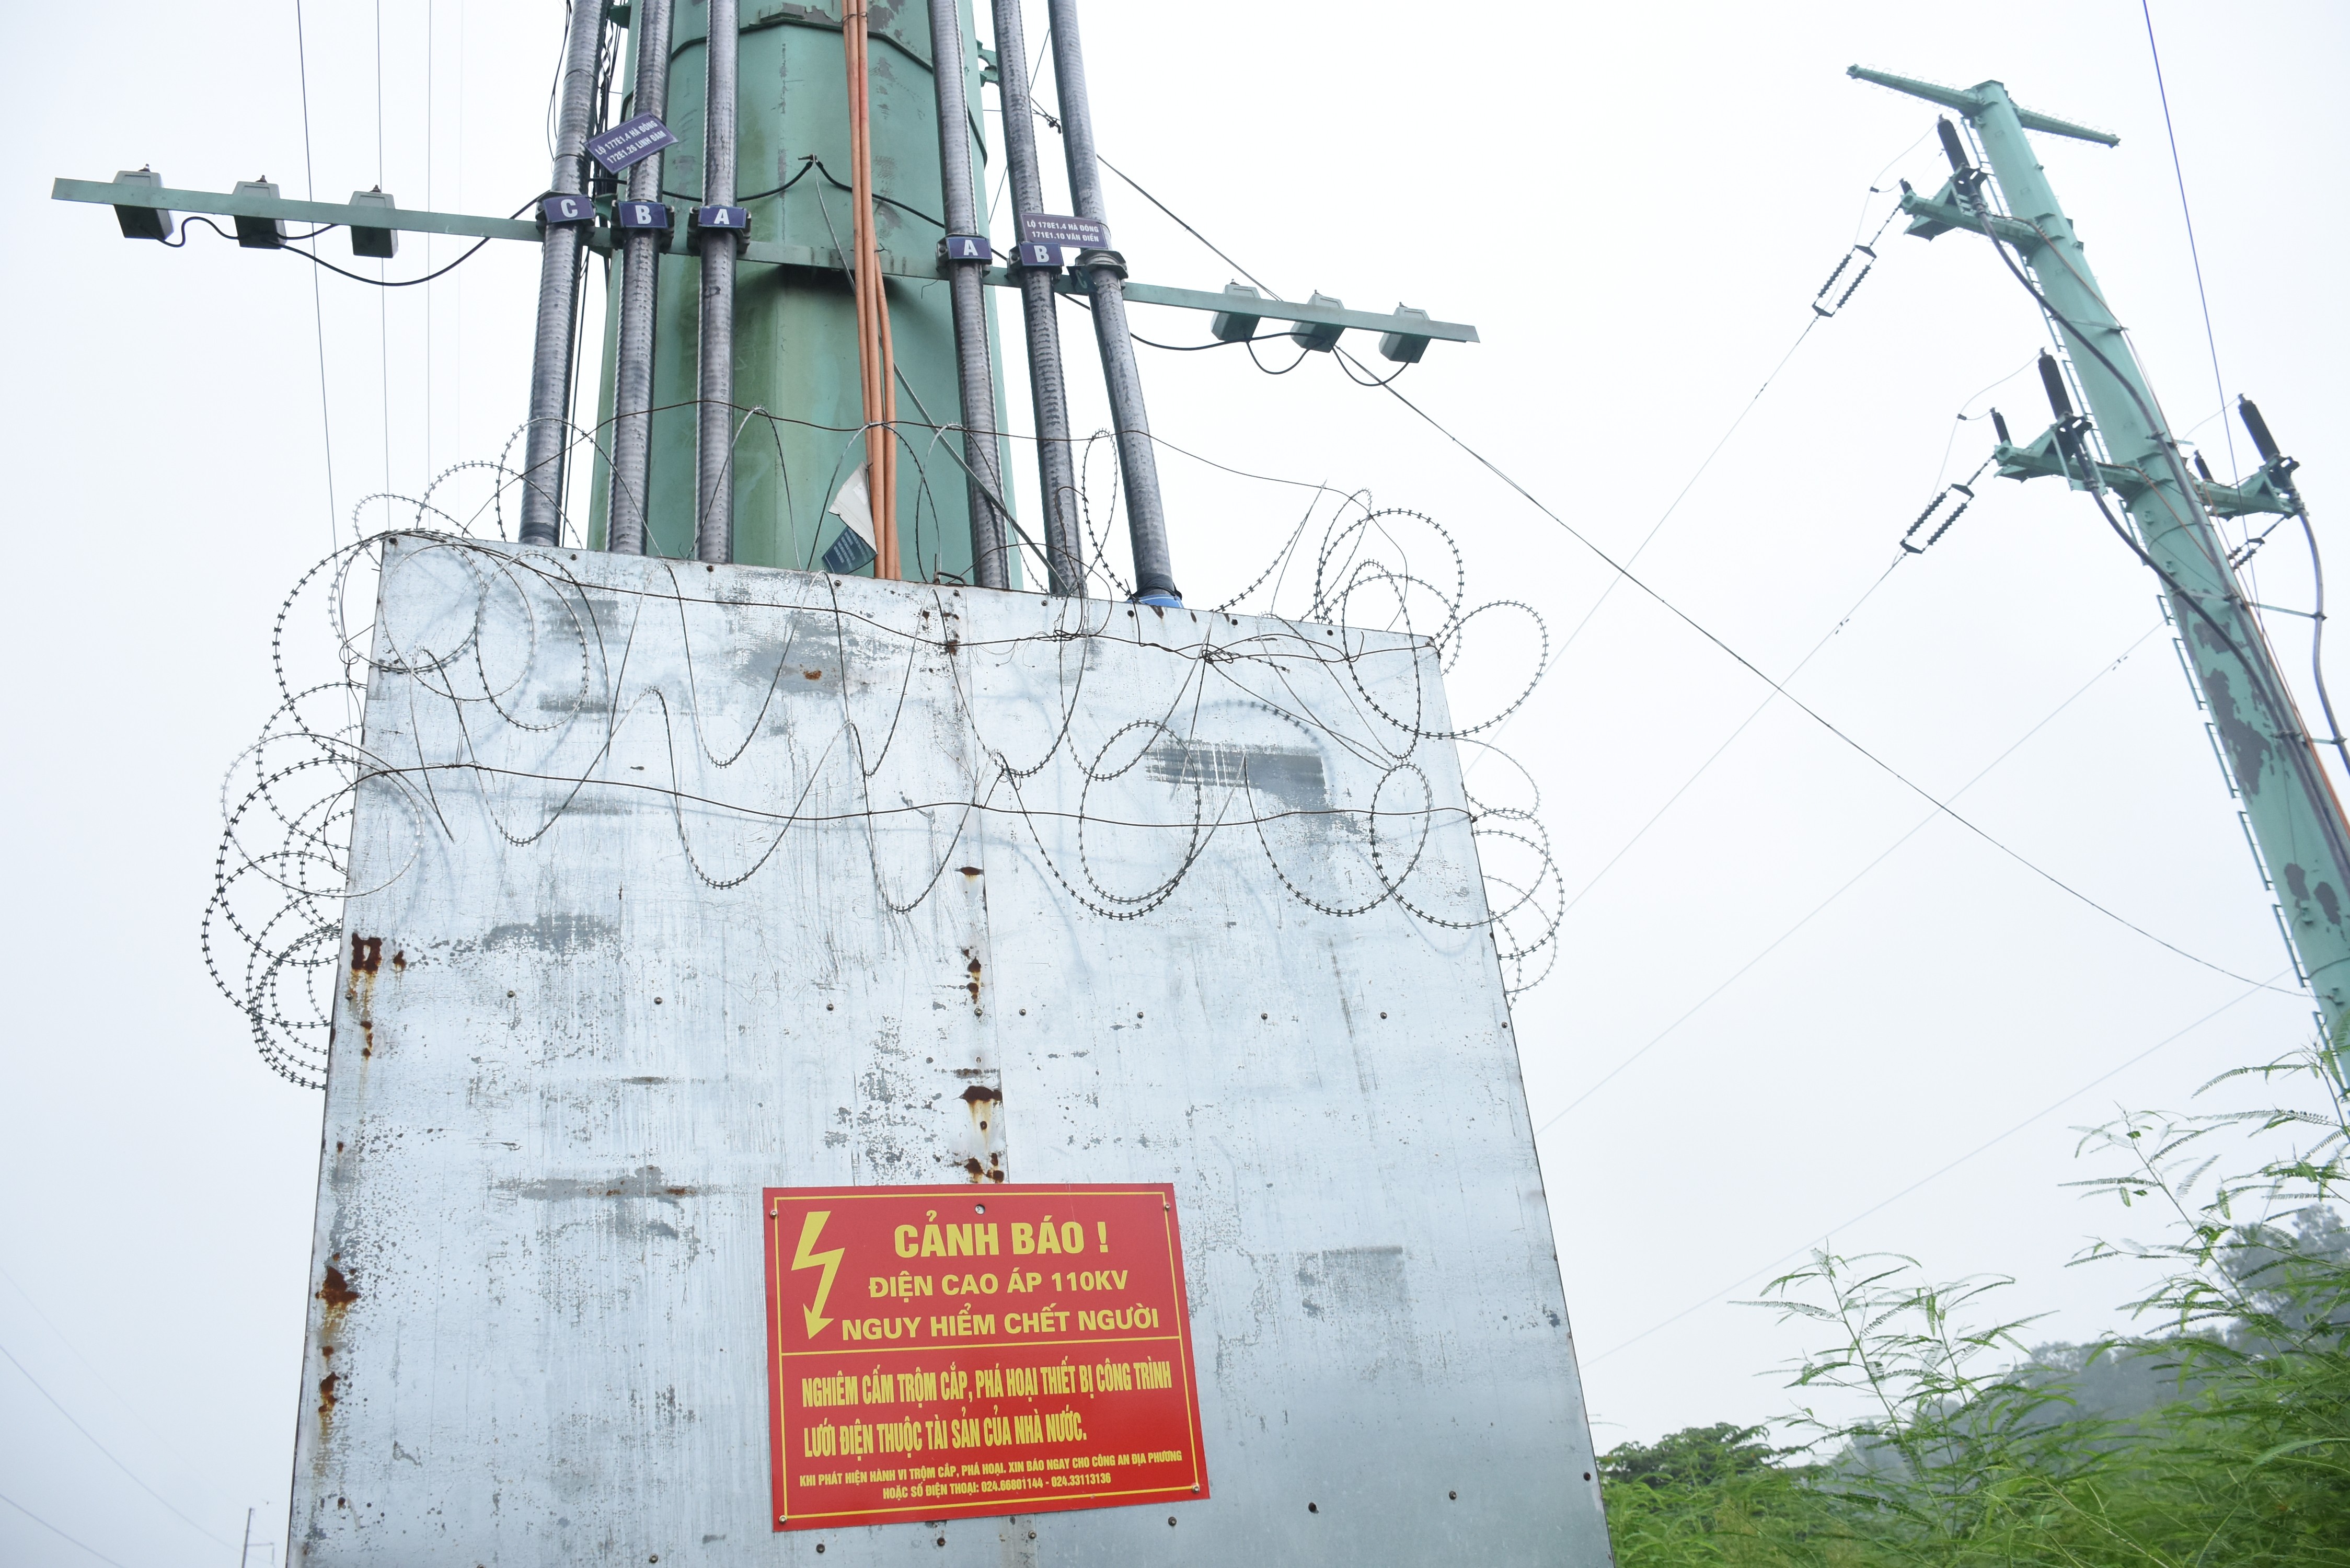 Kinh tế - Tình trạng trộm cắp dây tiếp địa tại Hà Nội gây ảnh hưởng không nhỏ đến vận hành ổn định của hệ thống điện, đặc biệt khi mùa mưa bão sắp tới (Hình 3).